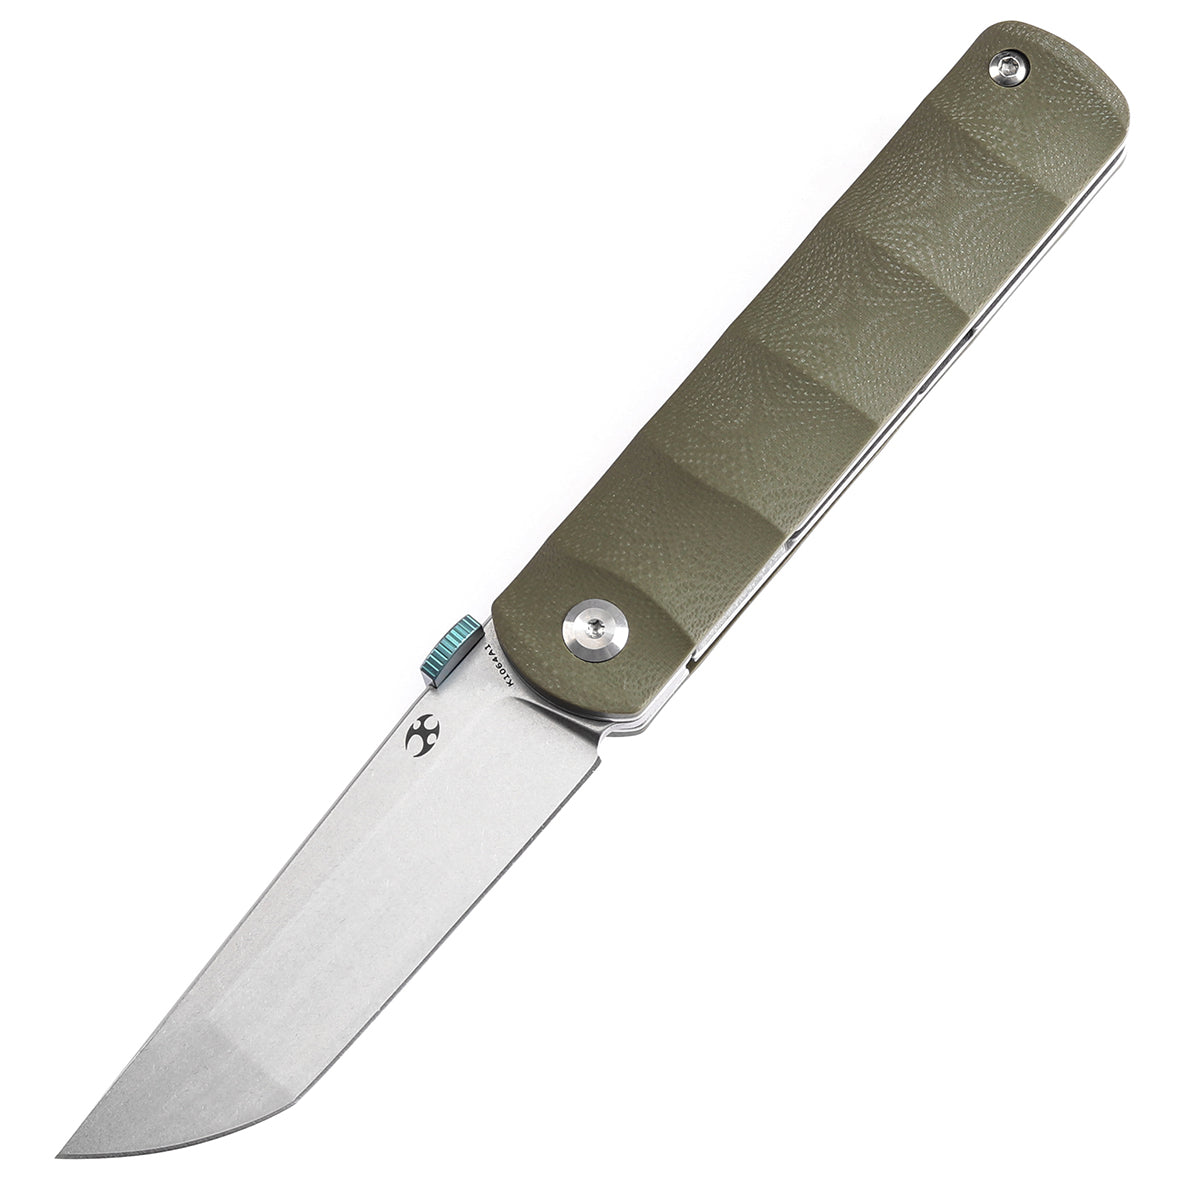 Kansept BTF K1064A1 CPM-S35VN Blade Green G10 Handle Edc Flipper Knife